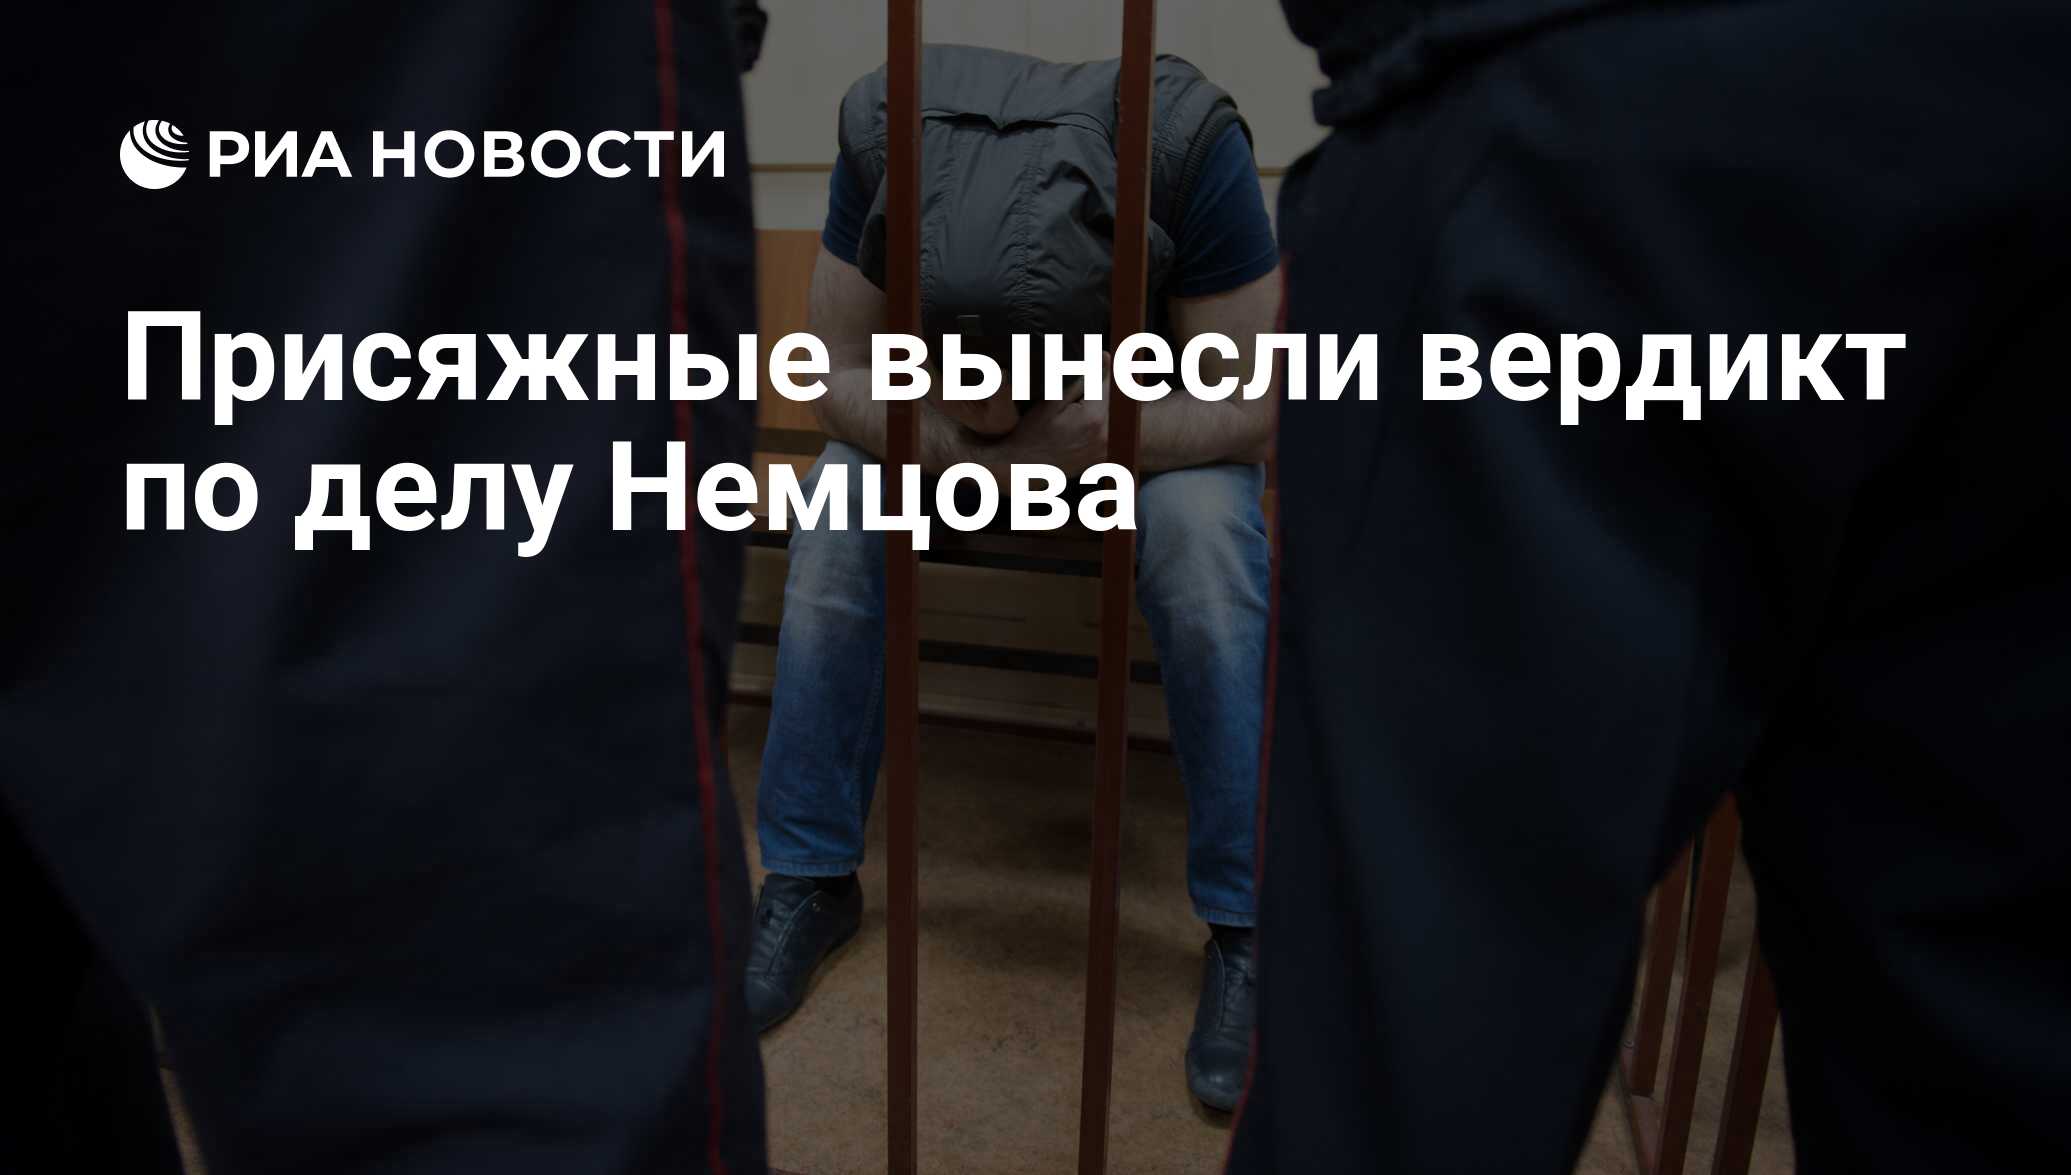 Уголовное дело Немцова фото. Присяжные вынесли вердикт